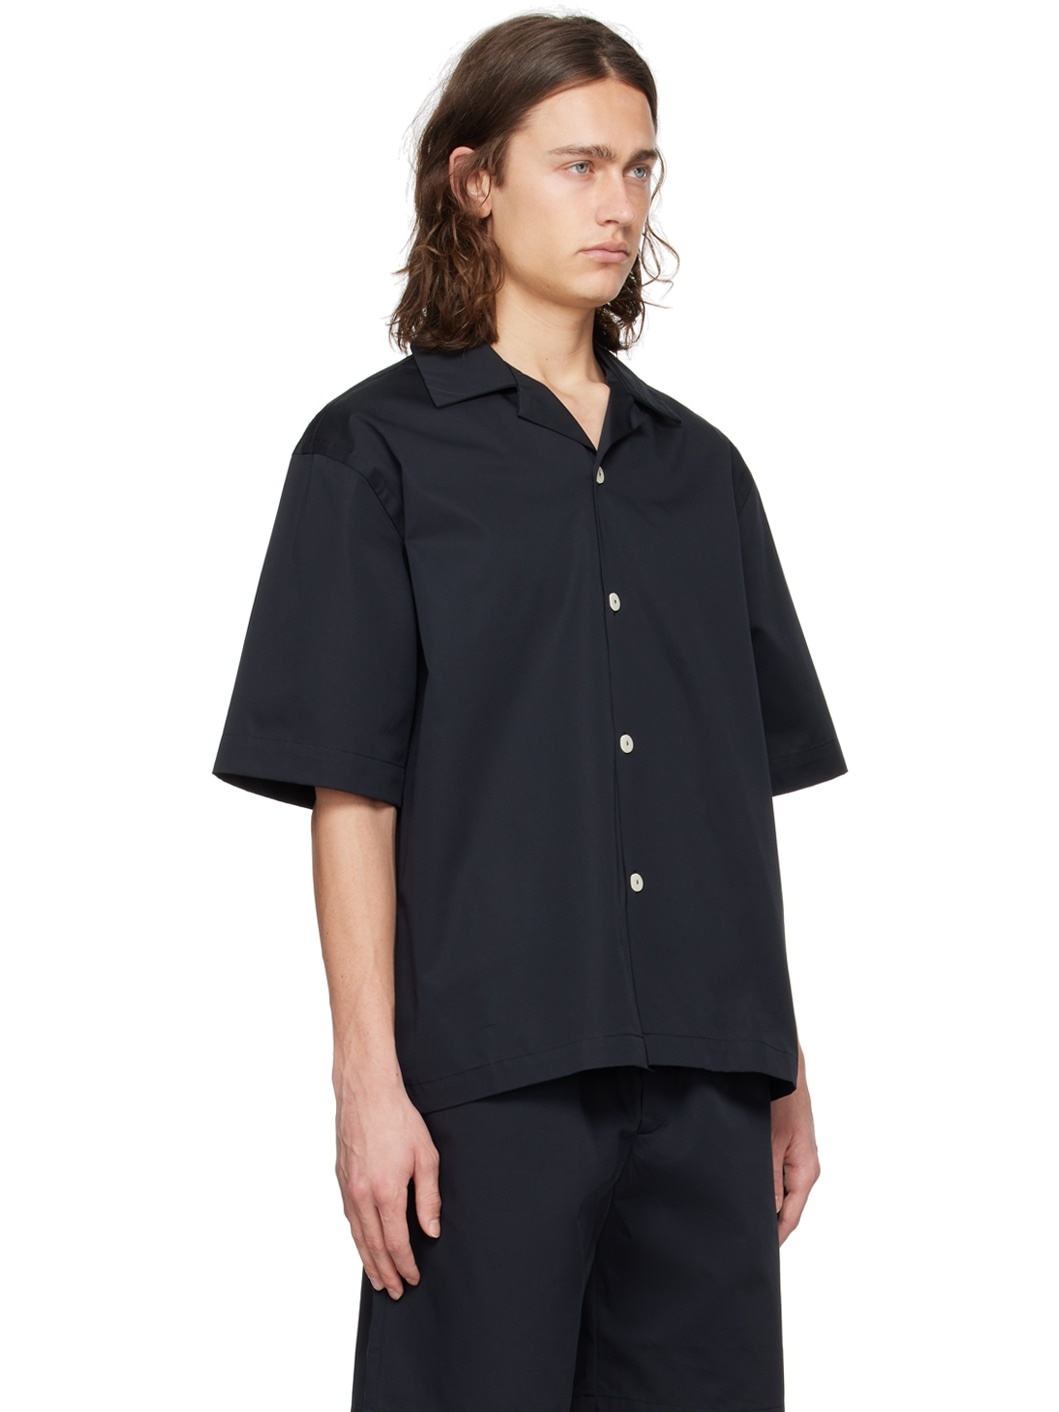 Black Camp Collar Shirt - 2